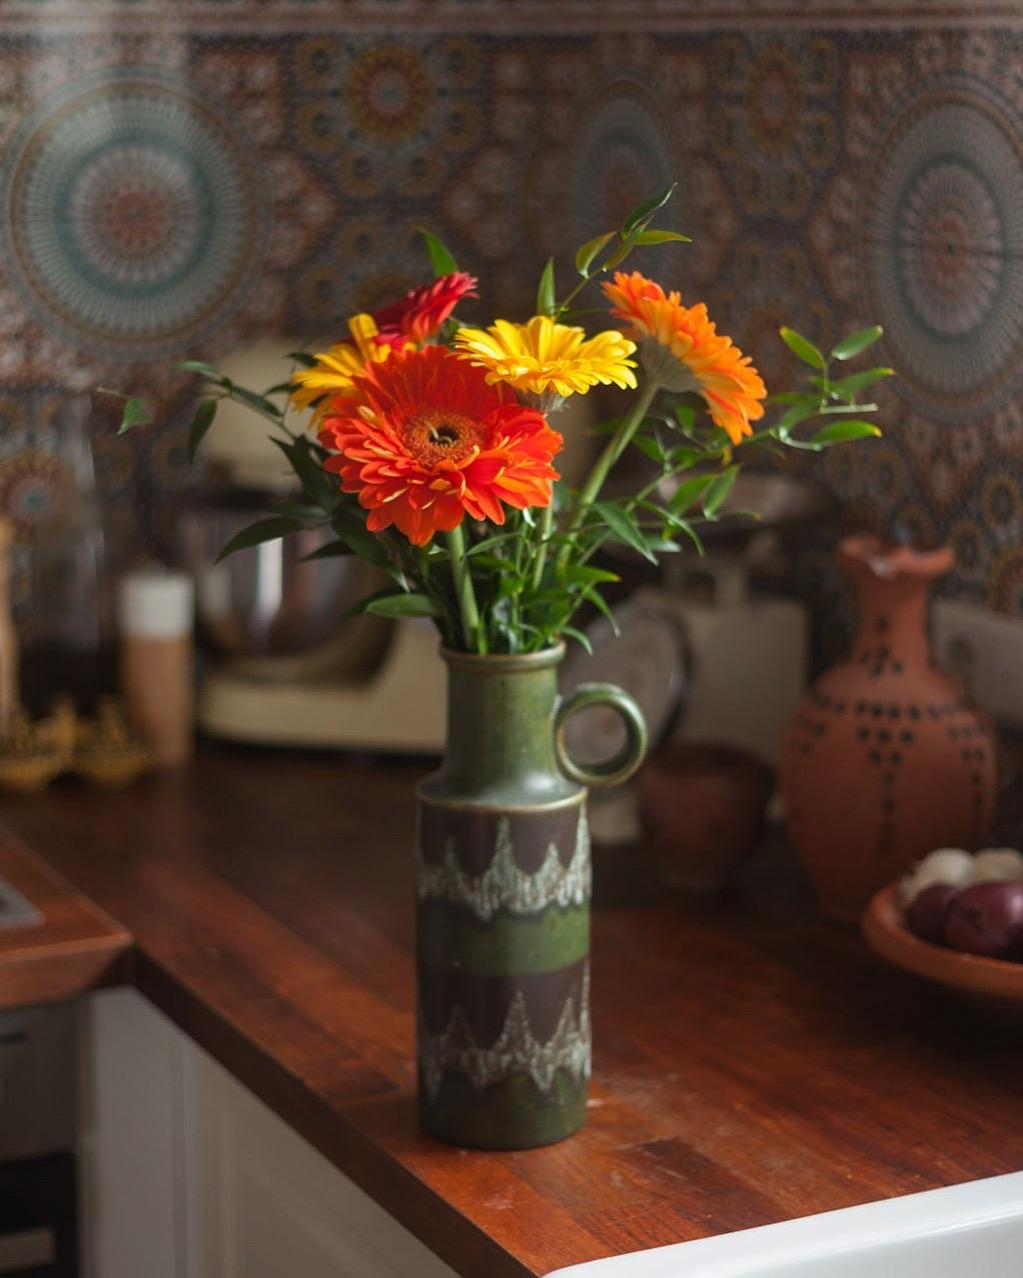 Manchmal steckt ein Lächeln in einer Vase... 
#frischeblumen #freshflowers #küche #boho #marokkanischefliesen